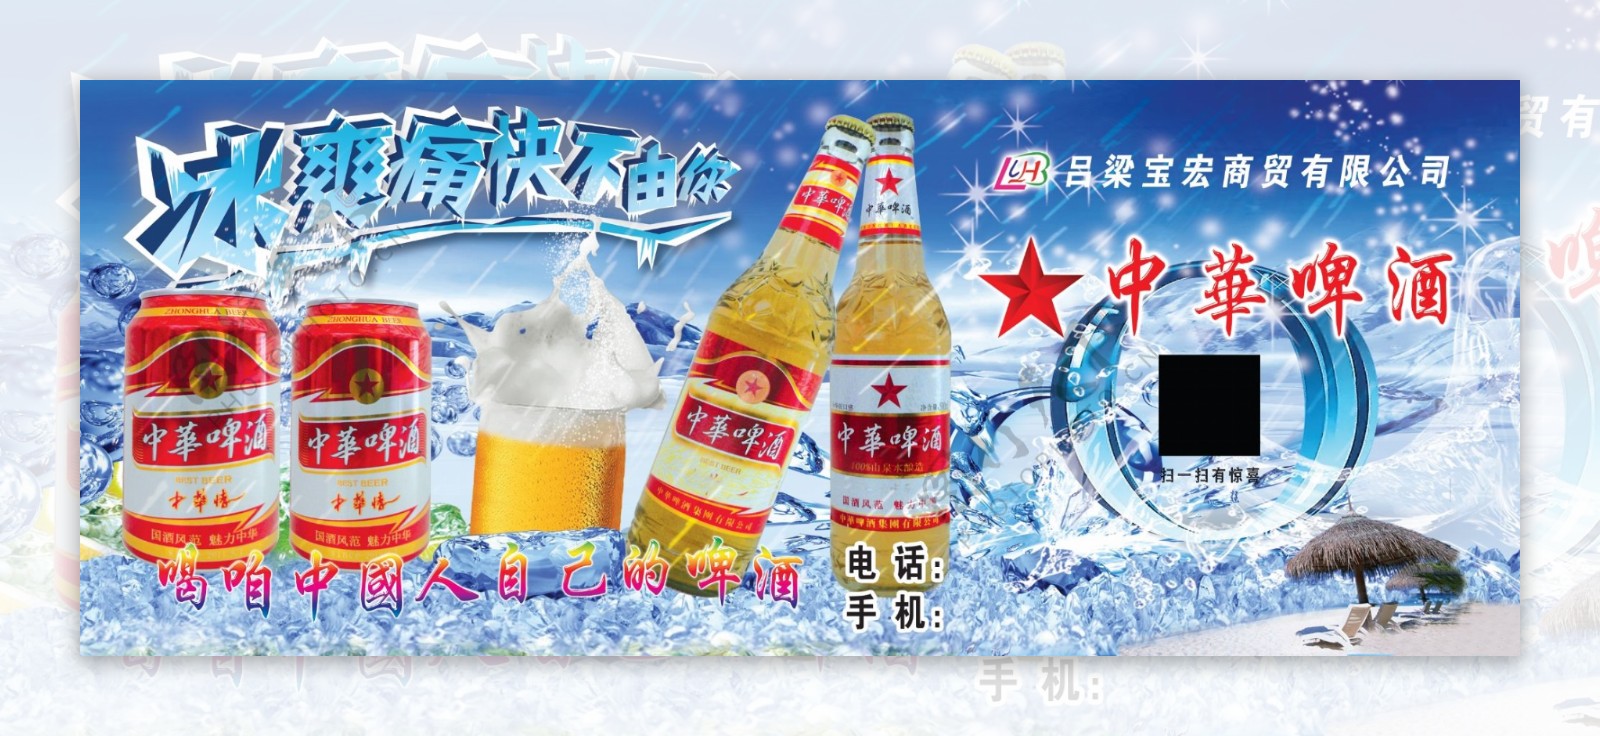 中华啤酒广告03